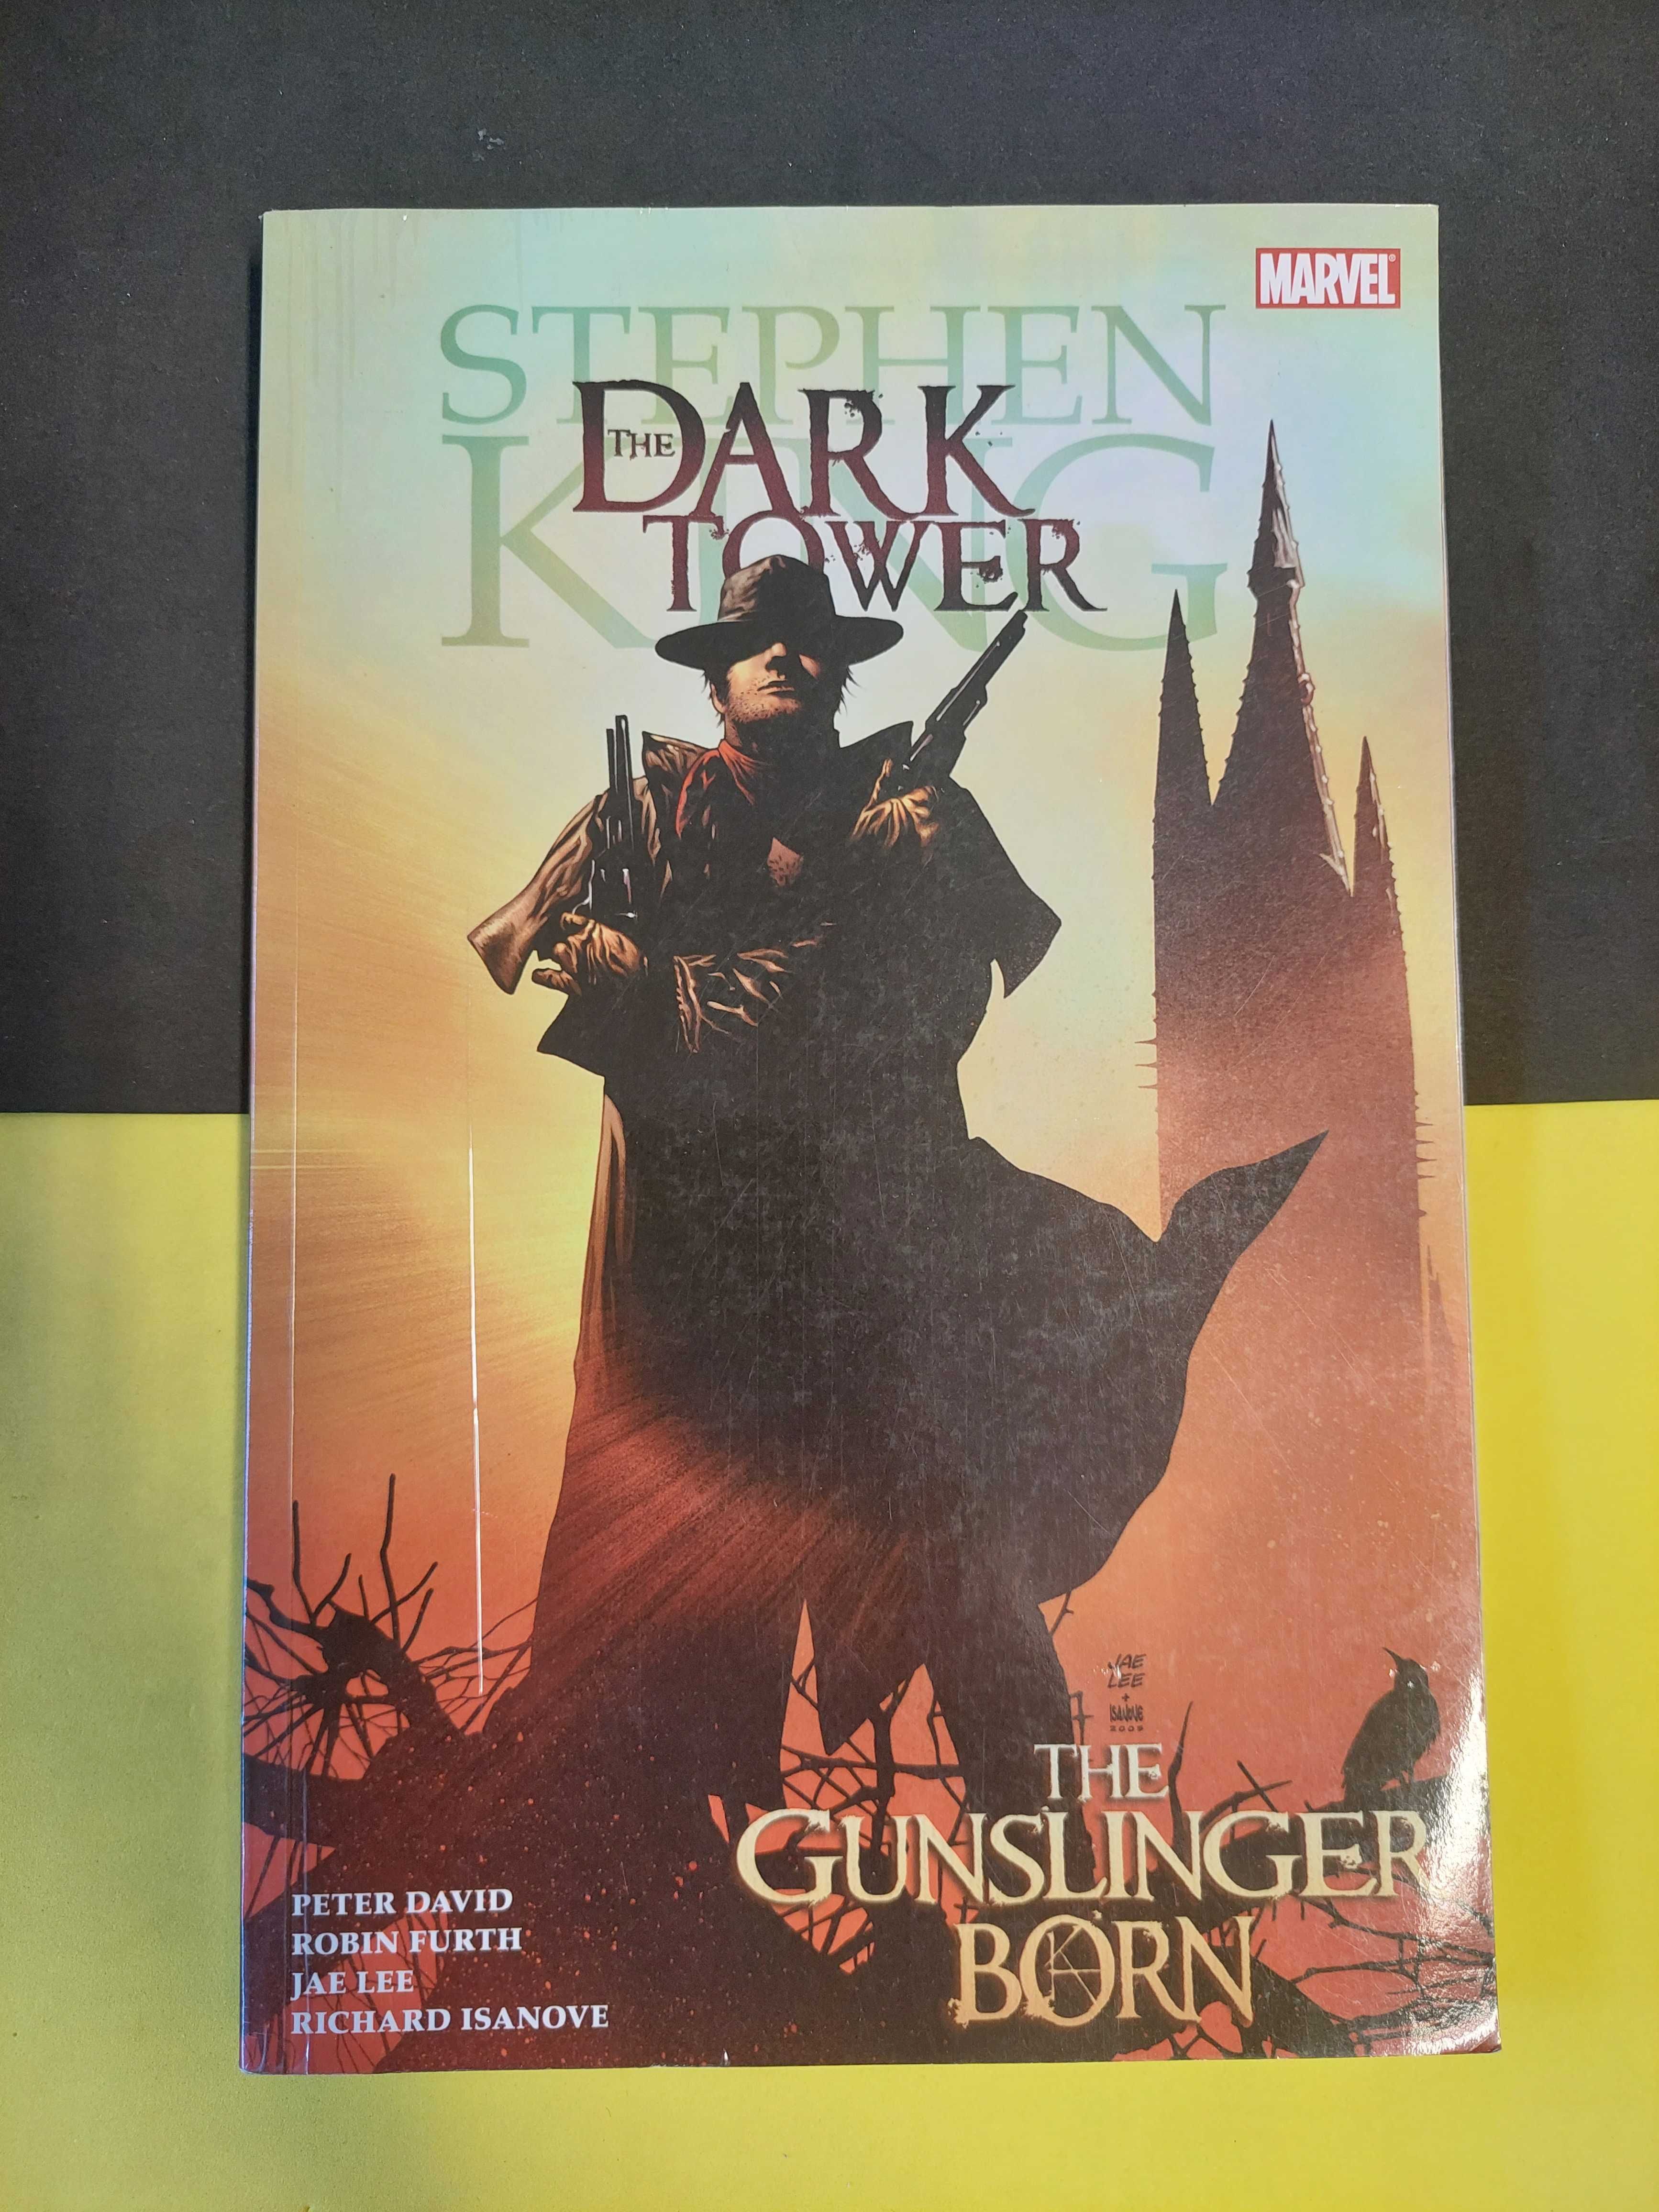 Stephen King - The dark tower: The gunslinger born